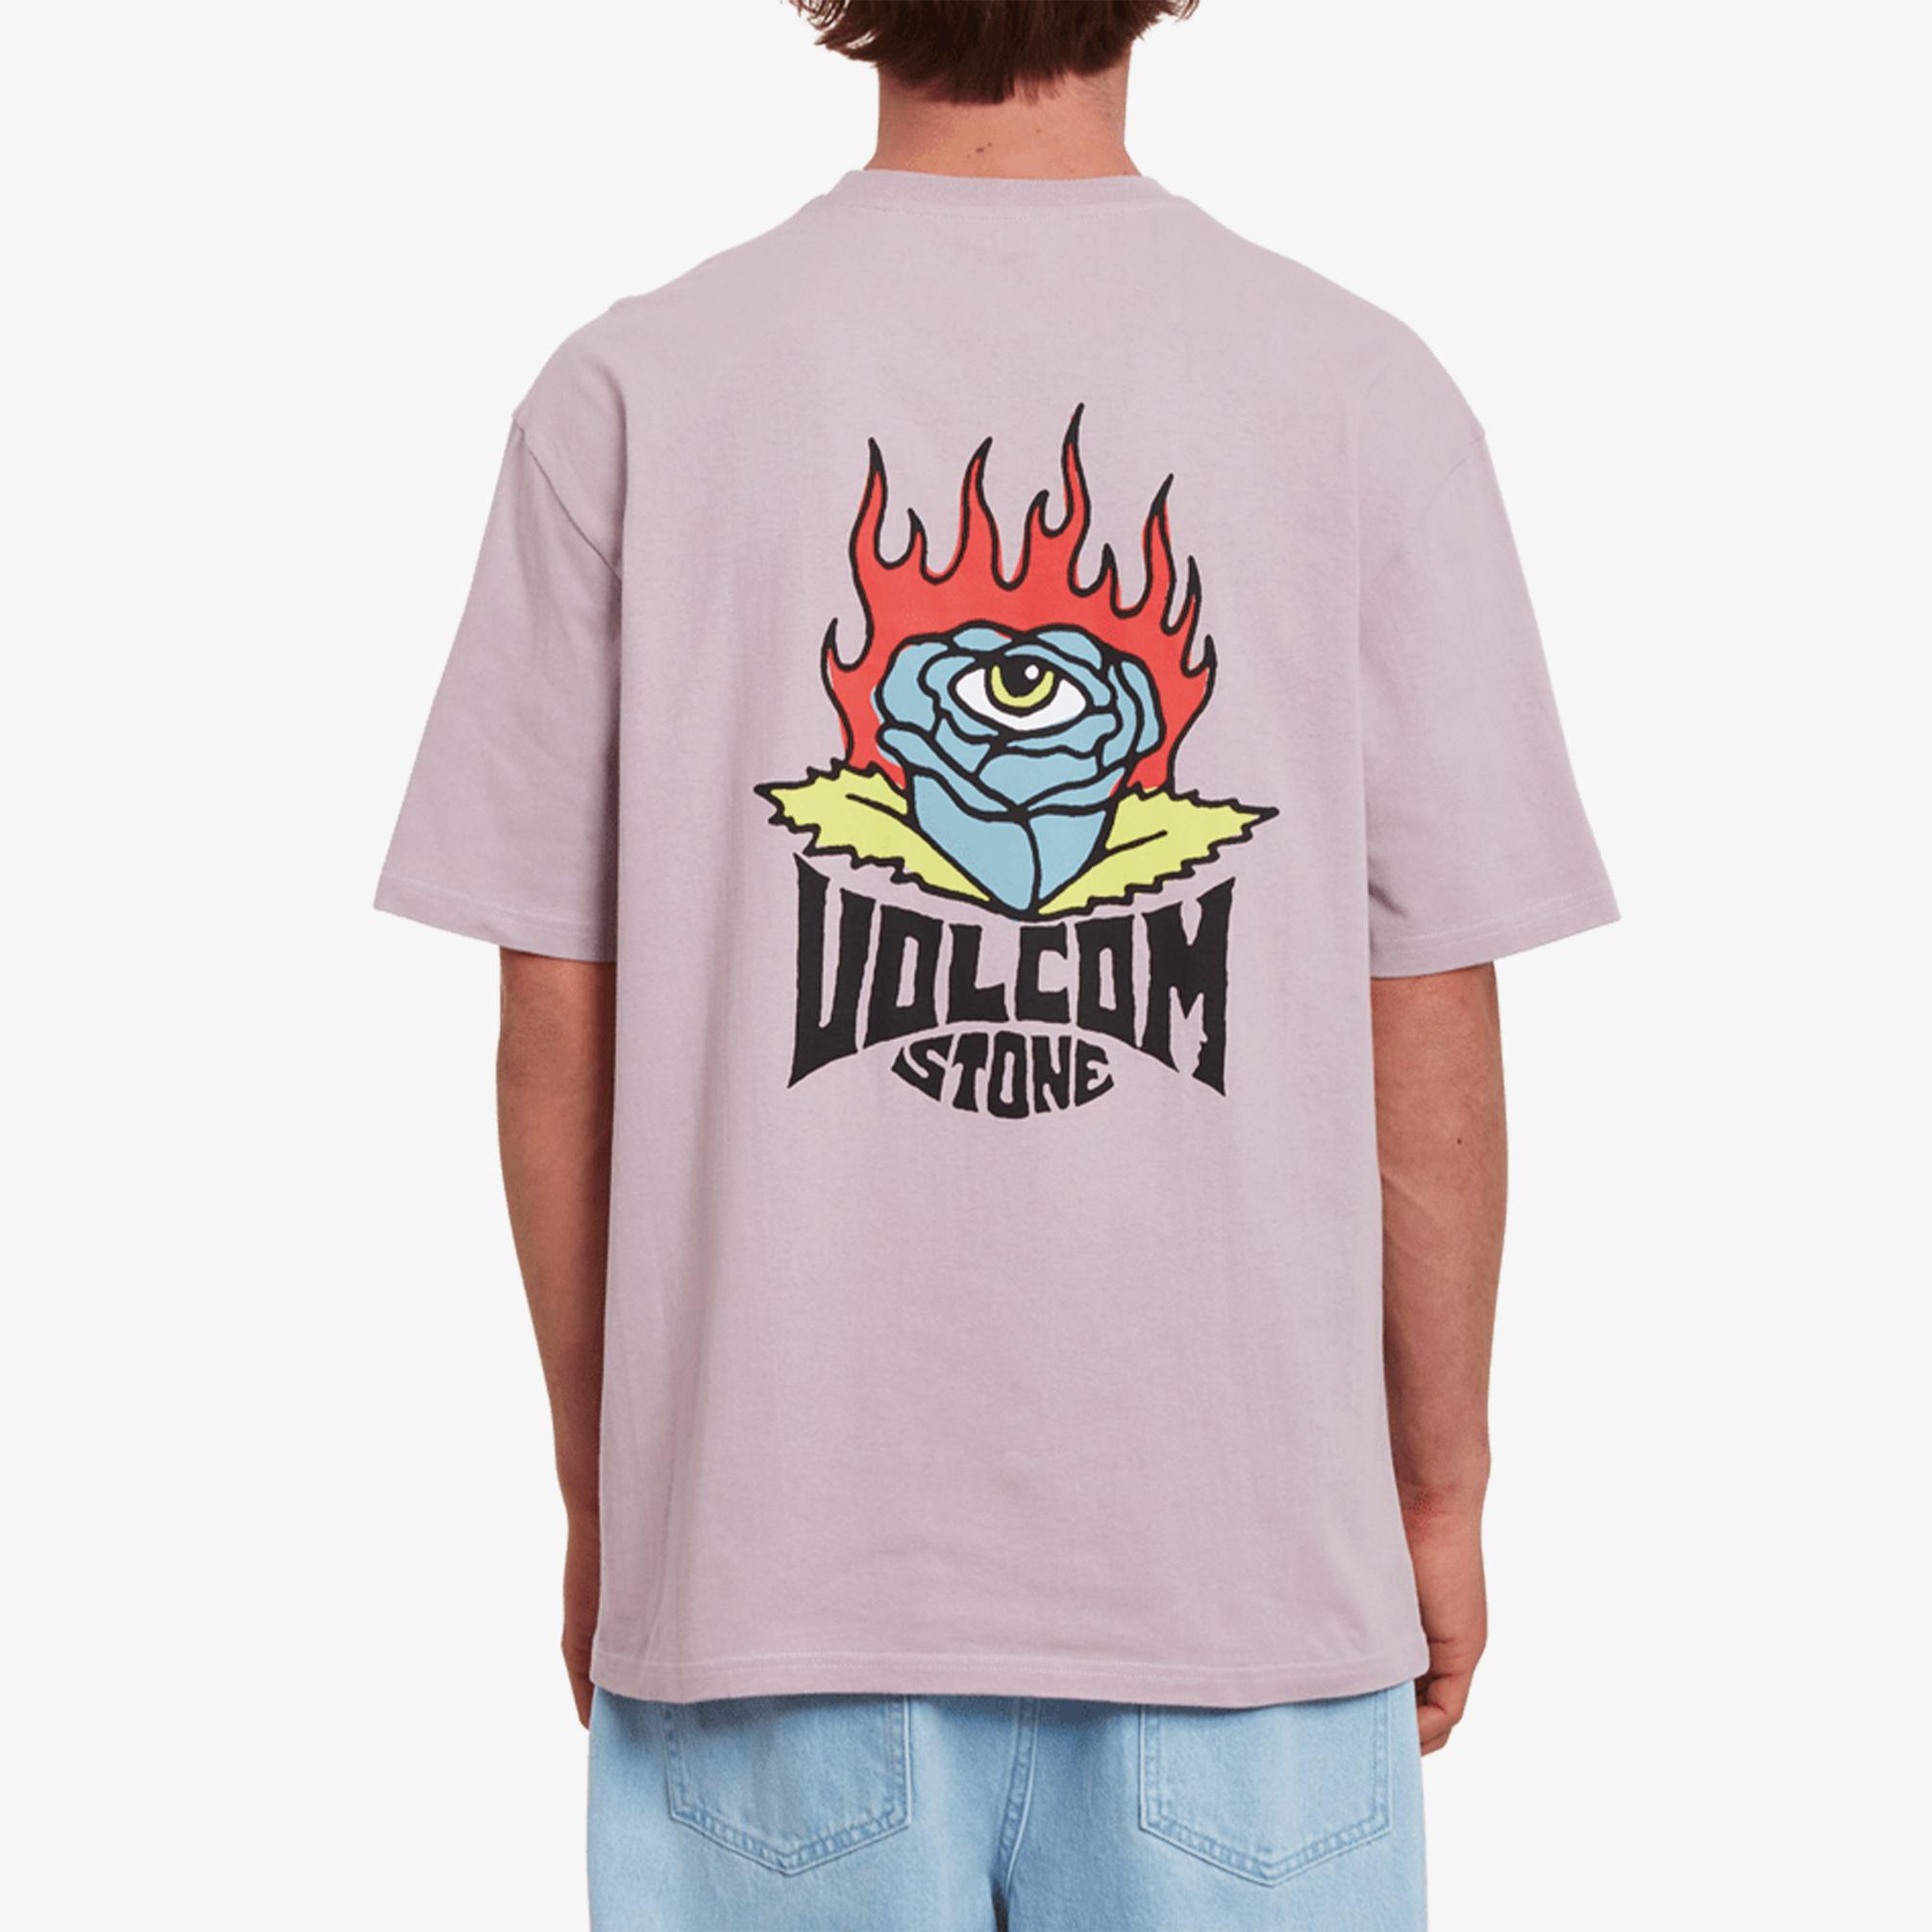  Volcom Roseye Erkek Mor T-Shirt